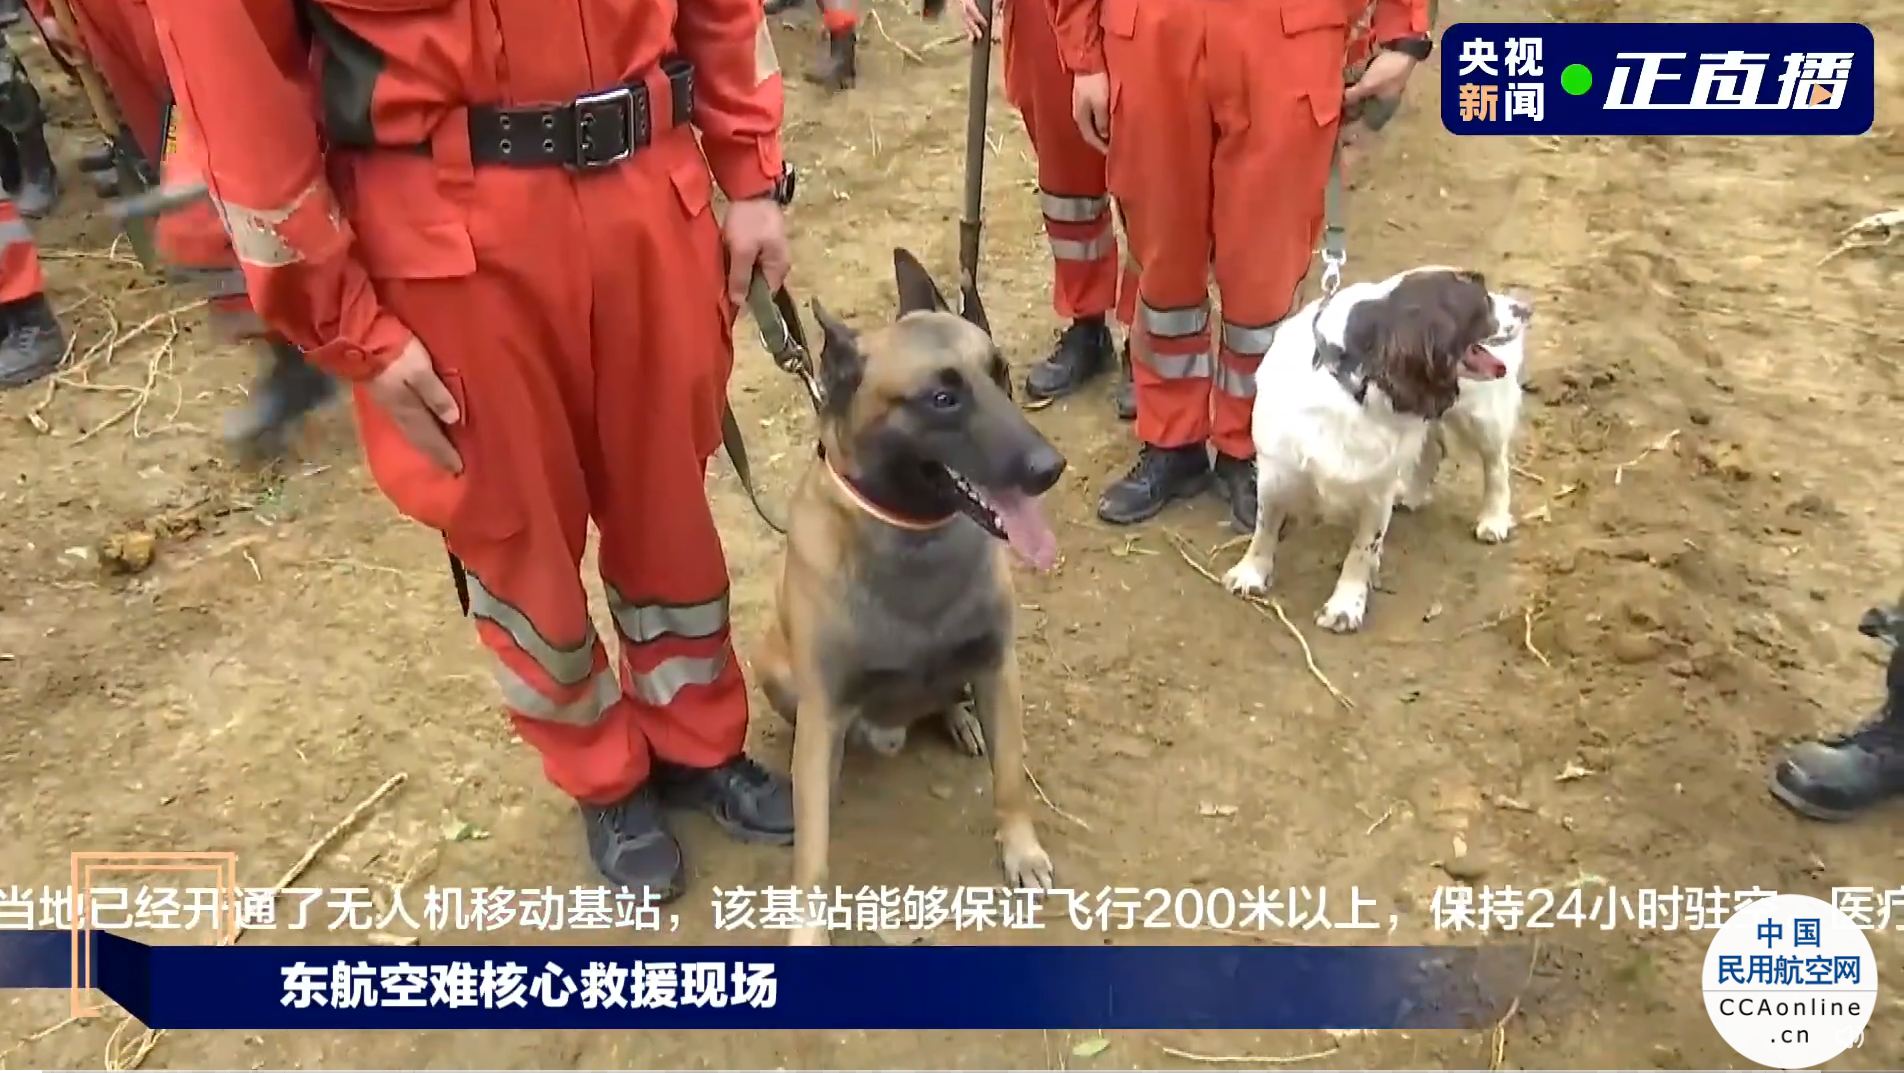 坠机核心区应急照明灯已升起，救援人员带着搜救犬寻找生命迹象